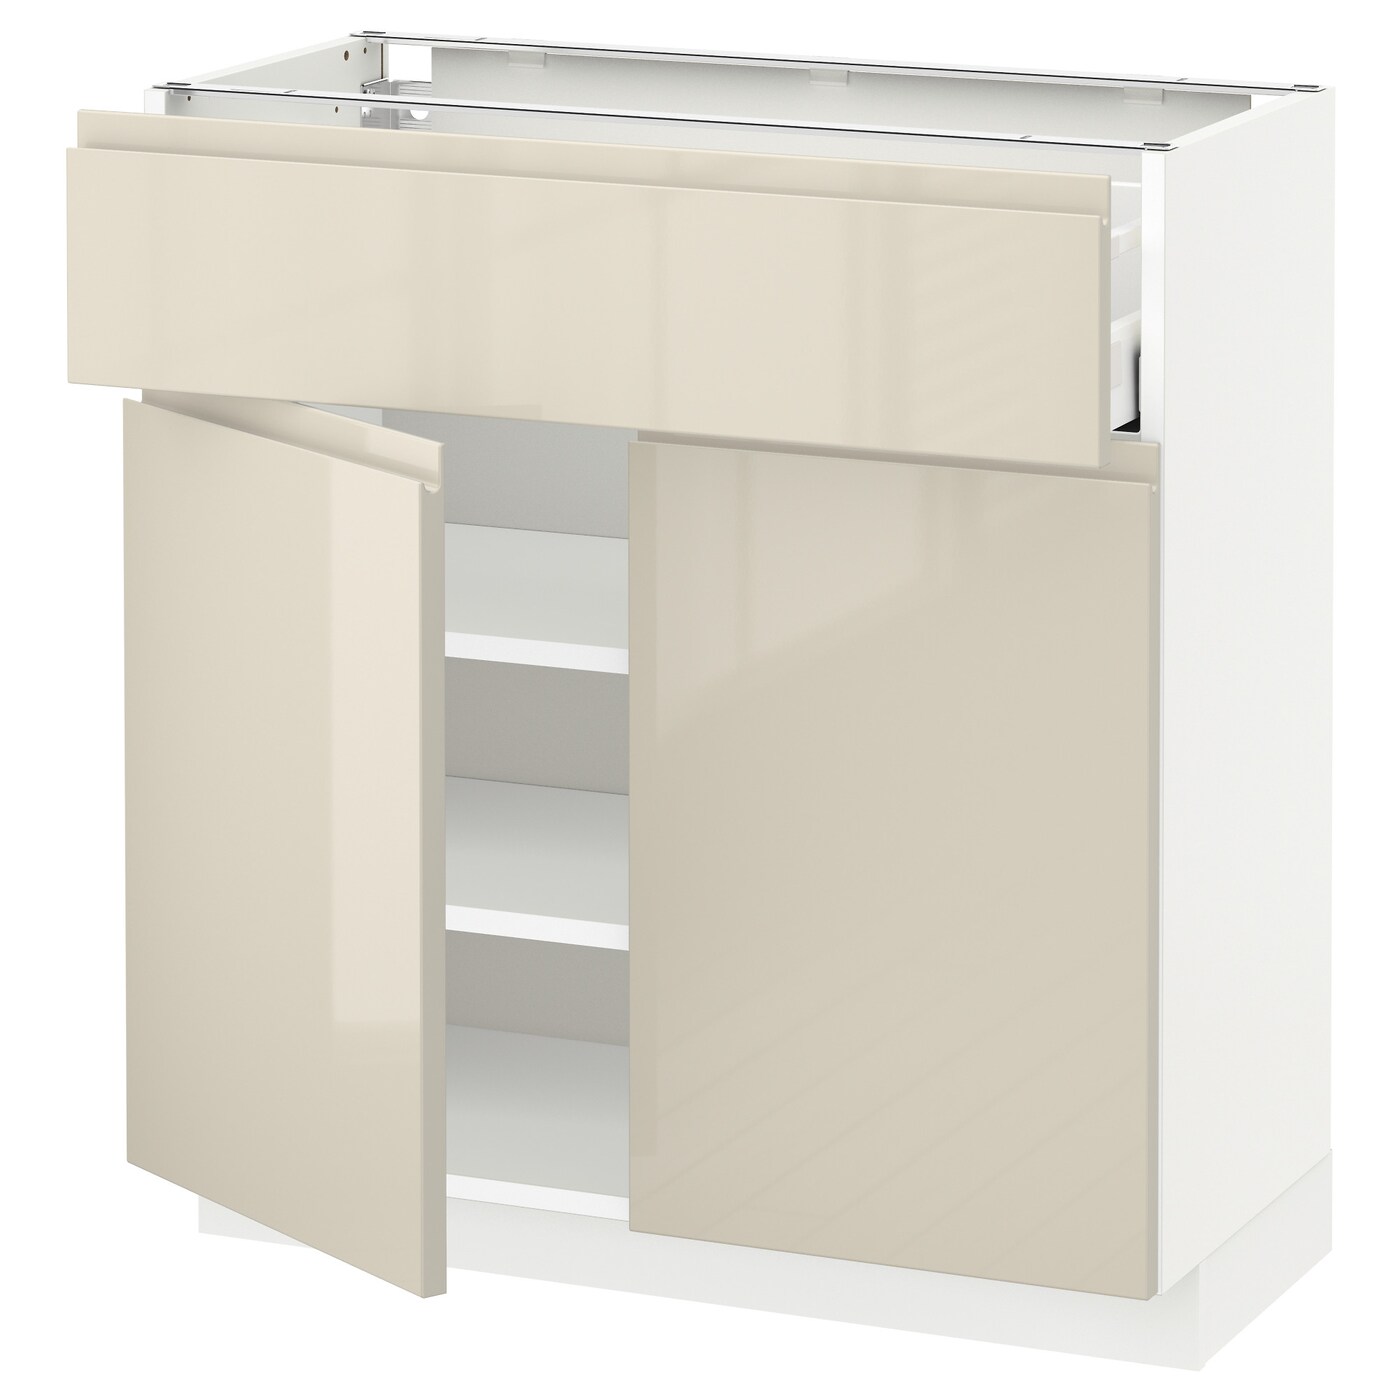 Напольный кухонный шкаф  - IKEA METOD MAXIMERA, 80x37x80см, белый/бежевый, МЕТОД МАКСИМЕРА ИКЕА